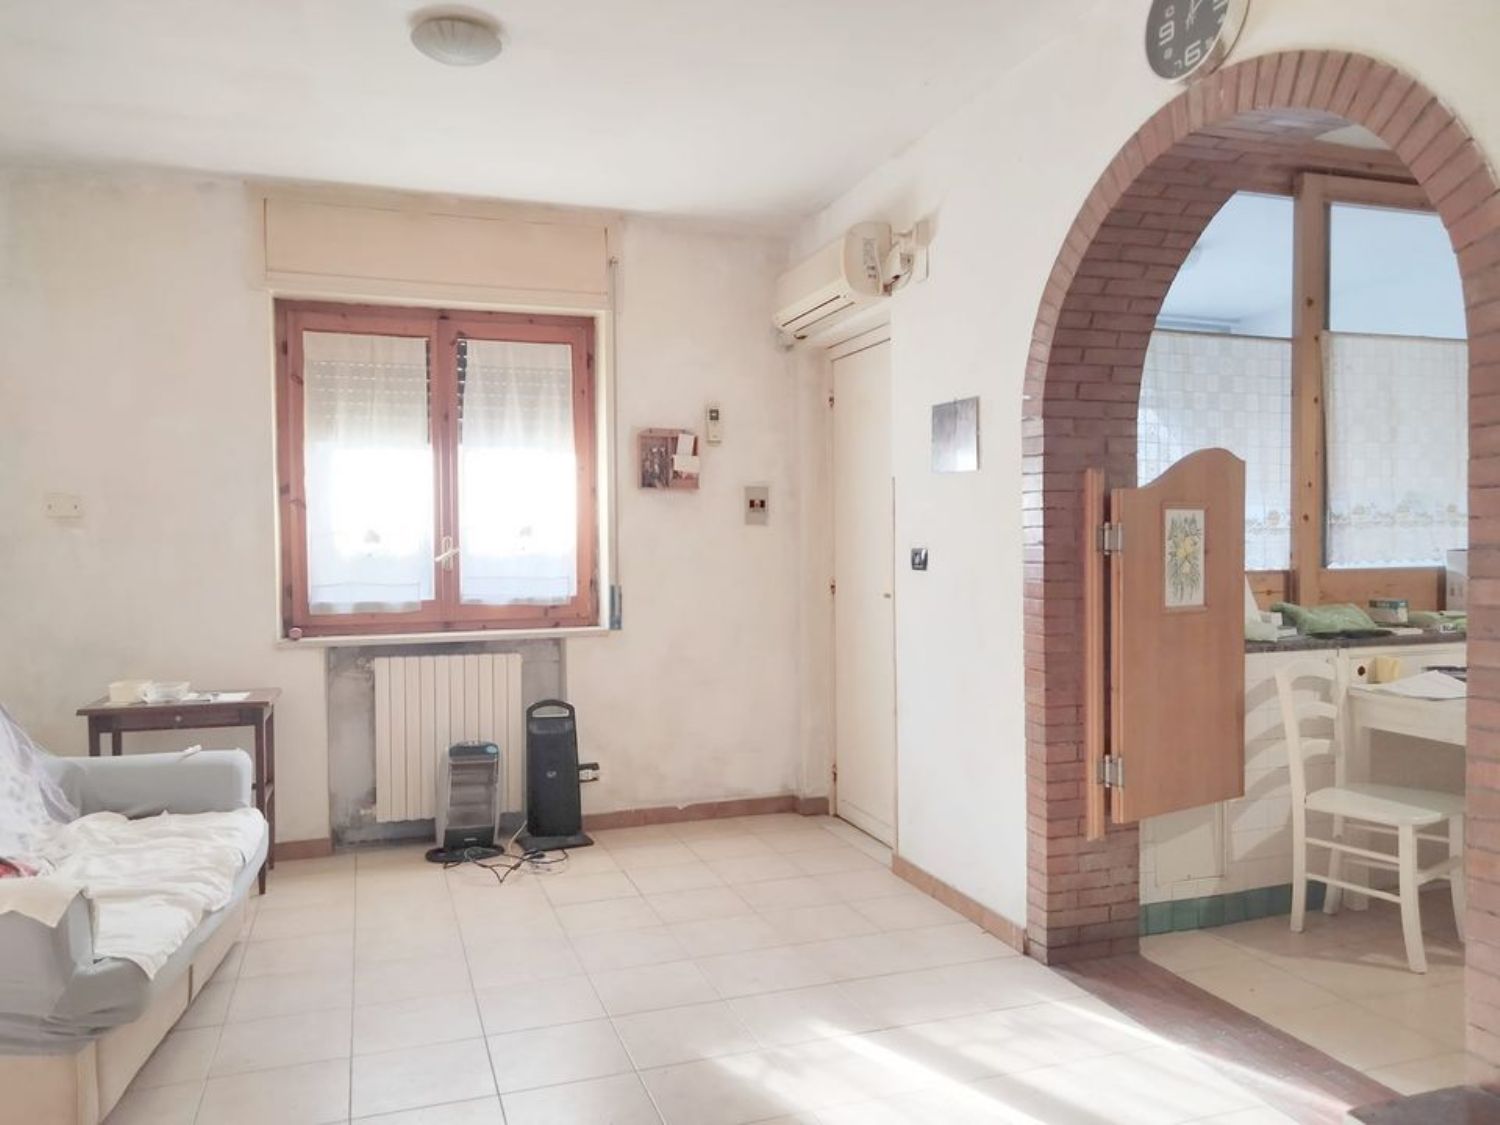 Appartamento in vendita a Vietri sul Mare, 4 locali, prezzo € 155.000 | PortaleAgenzieImmobiliari.it